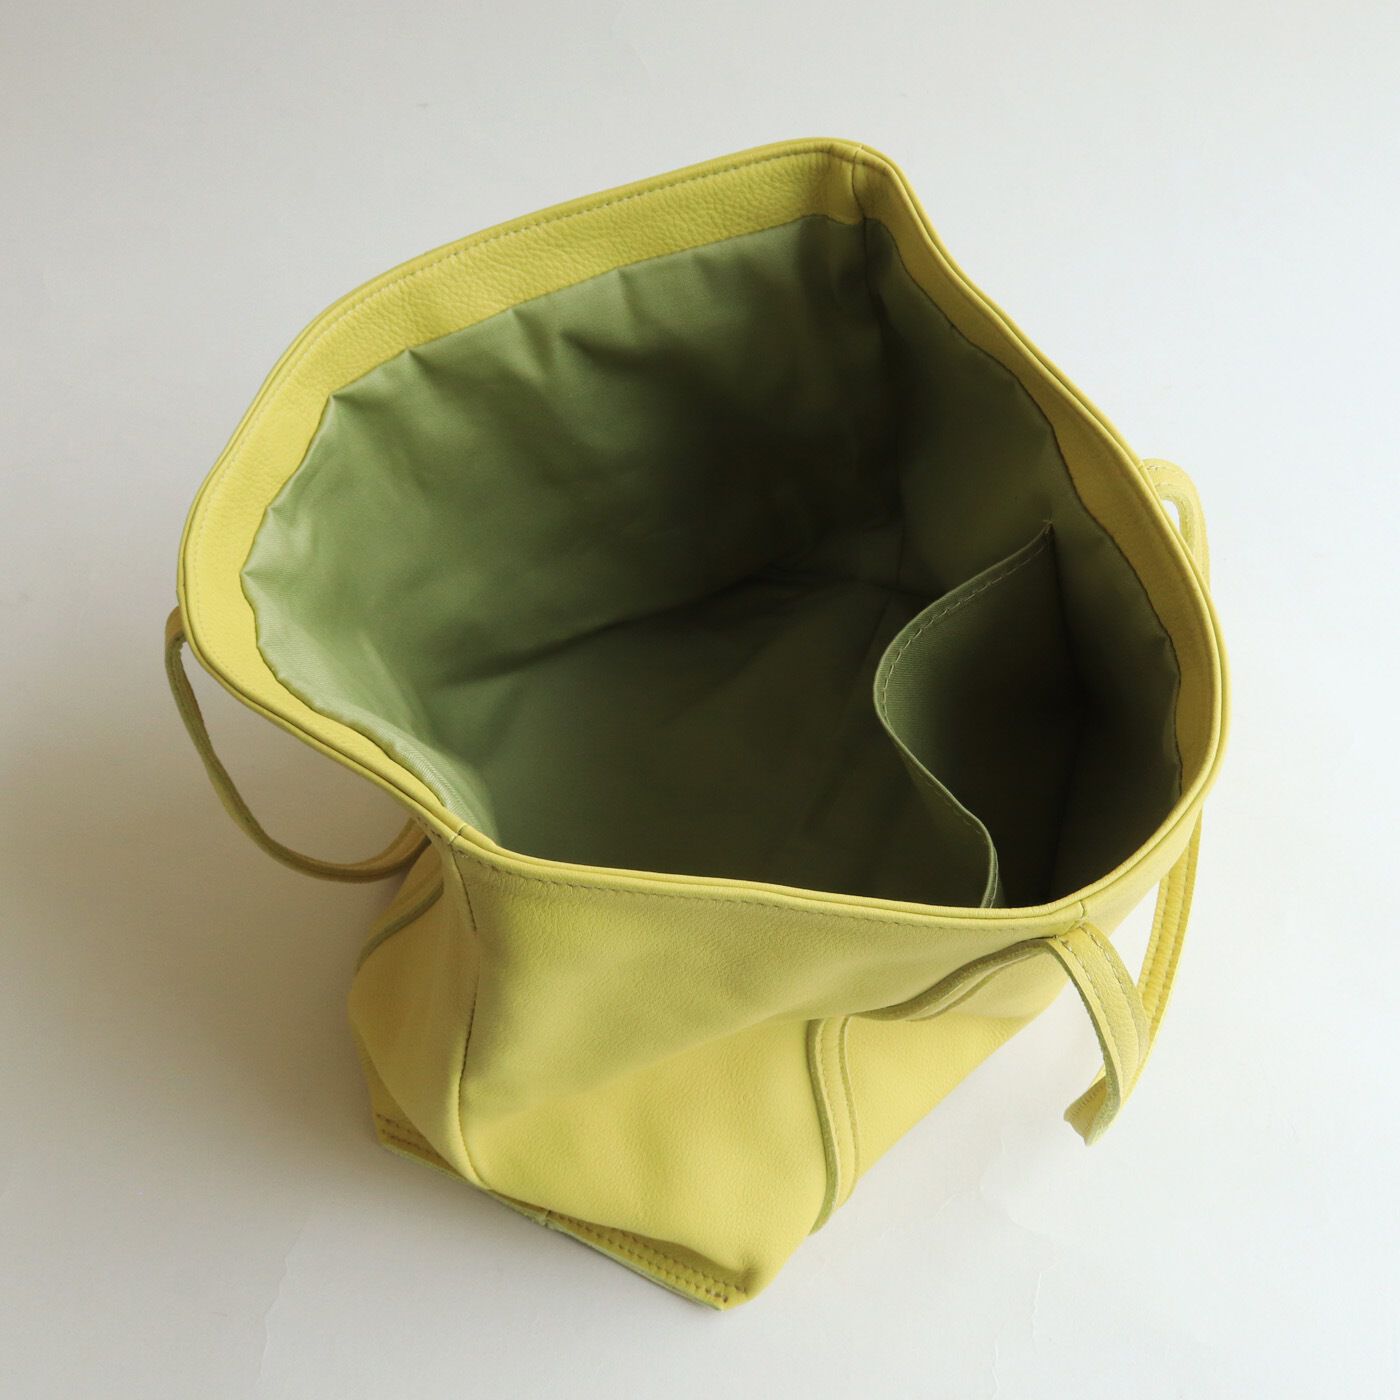 ＆Stories|福岡の鞄作家と作った 職人本革のトゥーシーンバッグ〈ライムイエロー〉|紙袋も有料化の時代だから、たっぷり入る容量は魅力です。便利な内ポケットがひとつ付いています。